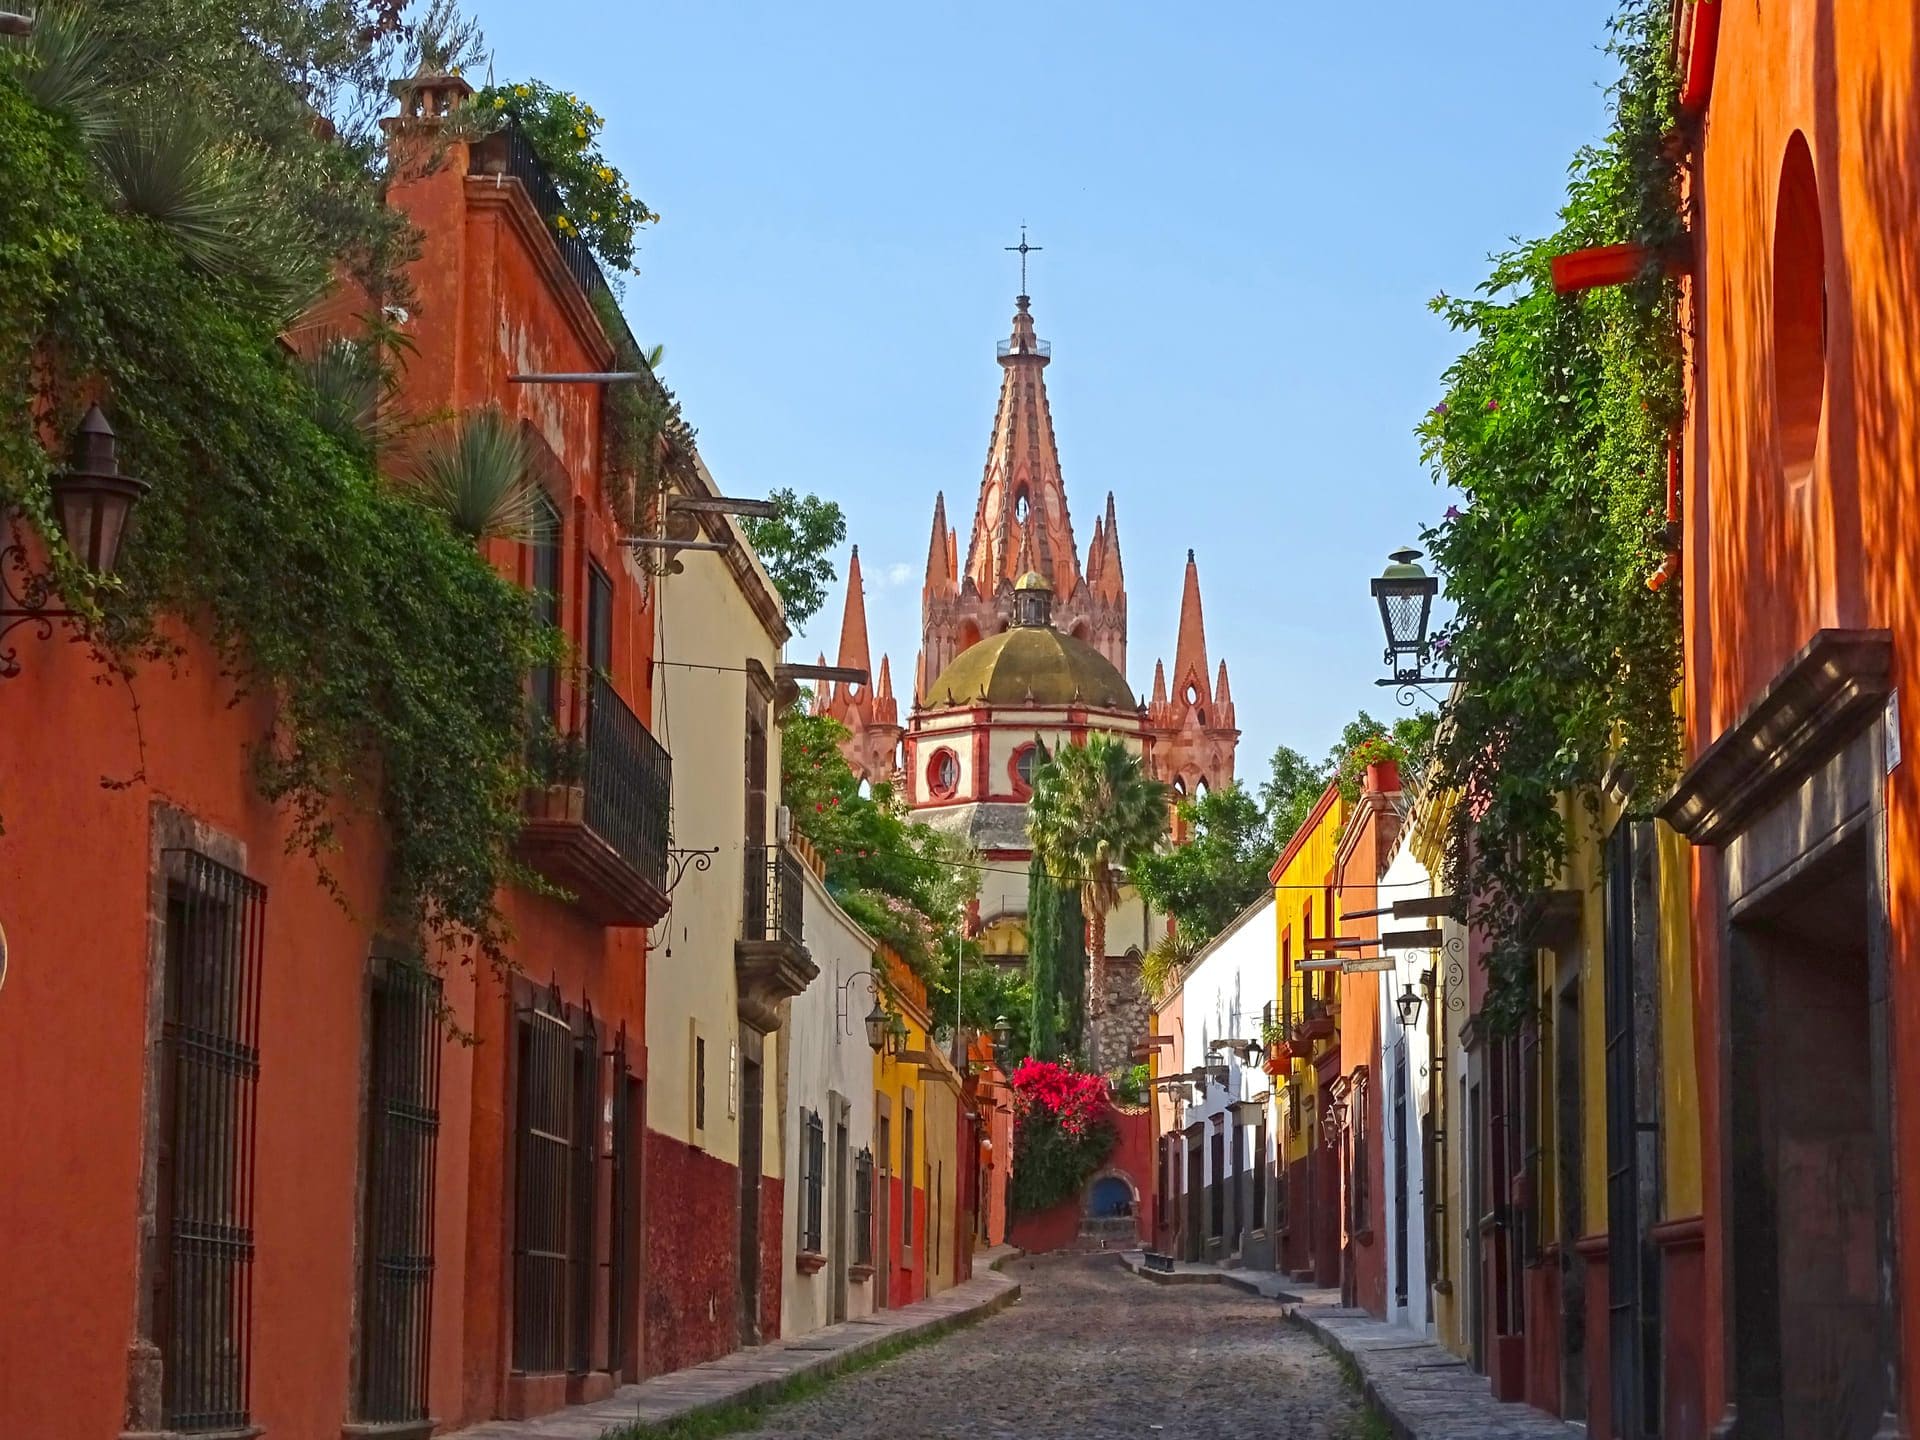 Aldama Street in San Miguel de Allende